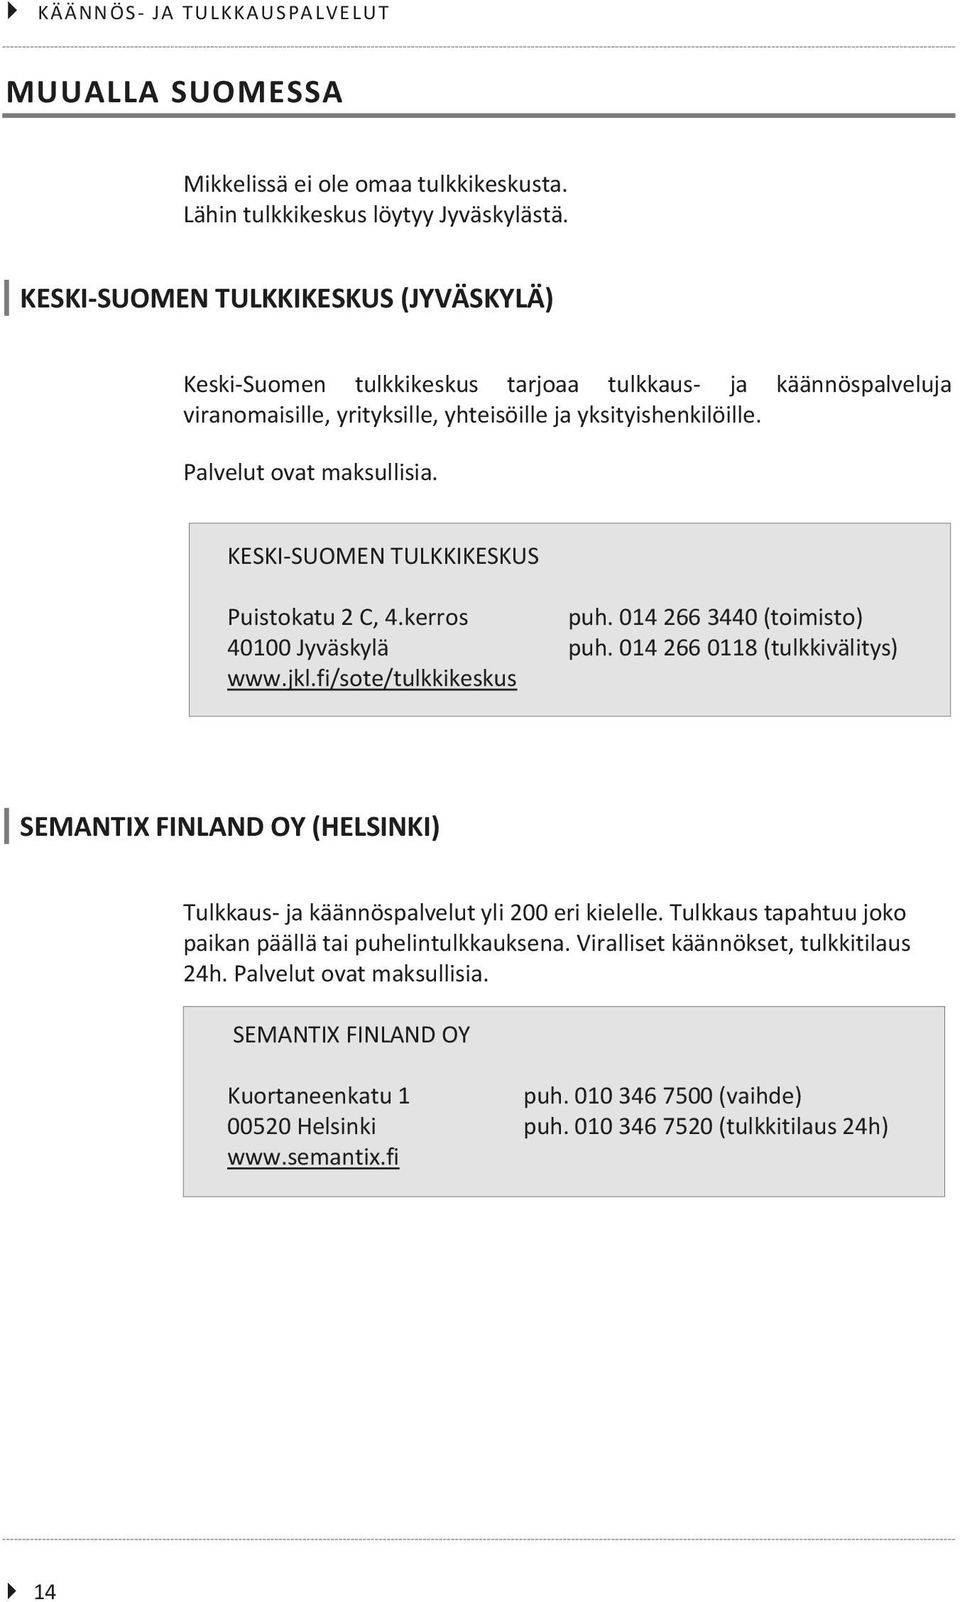 KESKI-SUOMEN TULKKIKESKUS Puistokatu 2 C, 4.kerros puh. 014 266 3440 (toimisto) 40100 Jyväskylä puh. 014 266 0118 (tulkkivälitys) www.jkl.